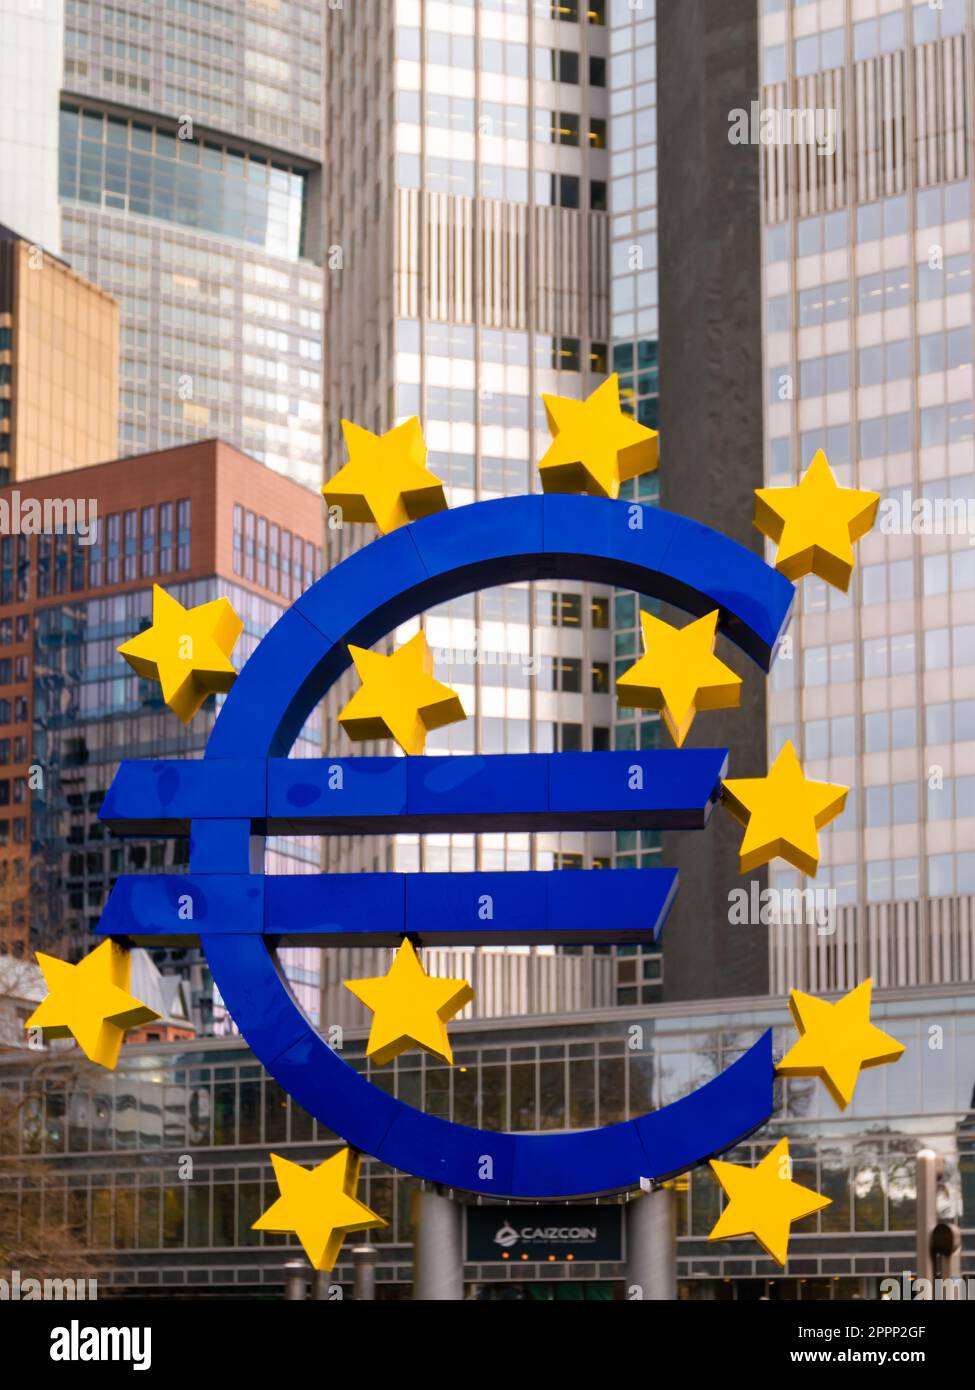 Francoforte sul meno, Germania - 29 gennaio 2023: Simbolo gigante dell'euro che simboleggia il mercato finanziario europeo e l'Eurozona alla sede della Banca centrale europea Foto Stock